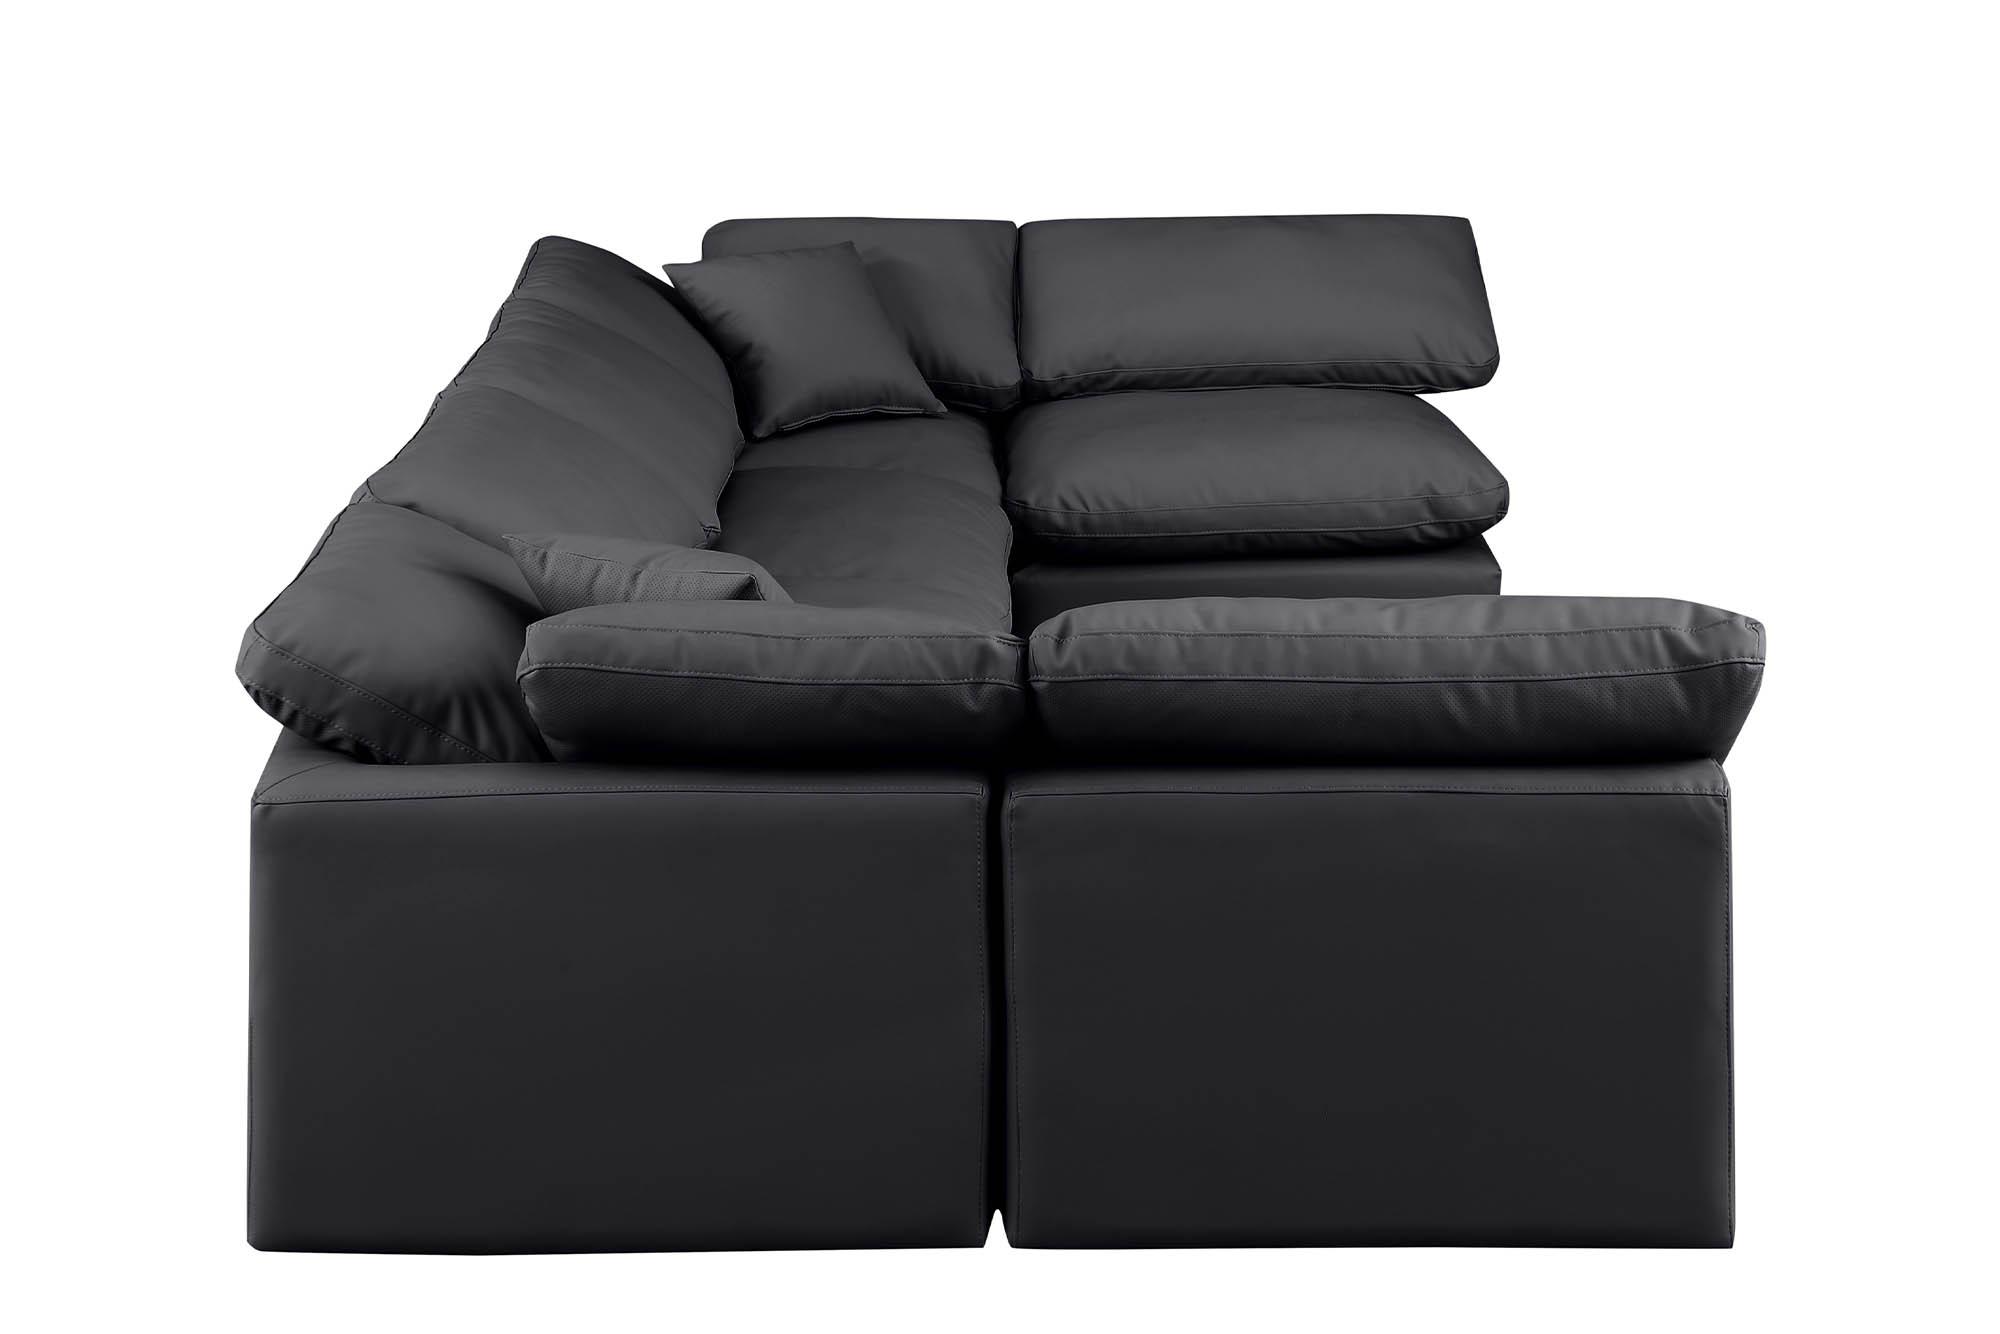 

    
Meridian Furniture INDULGE 146Black-Sec6D Modular Sectional Sofa Black 146Black-Sec6D
